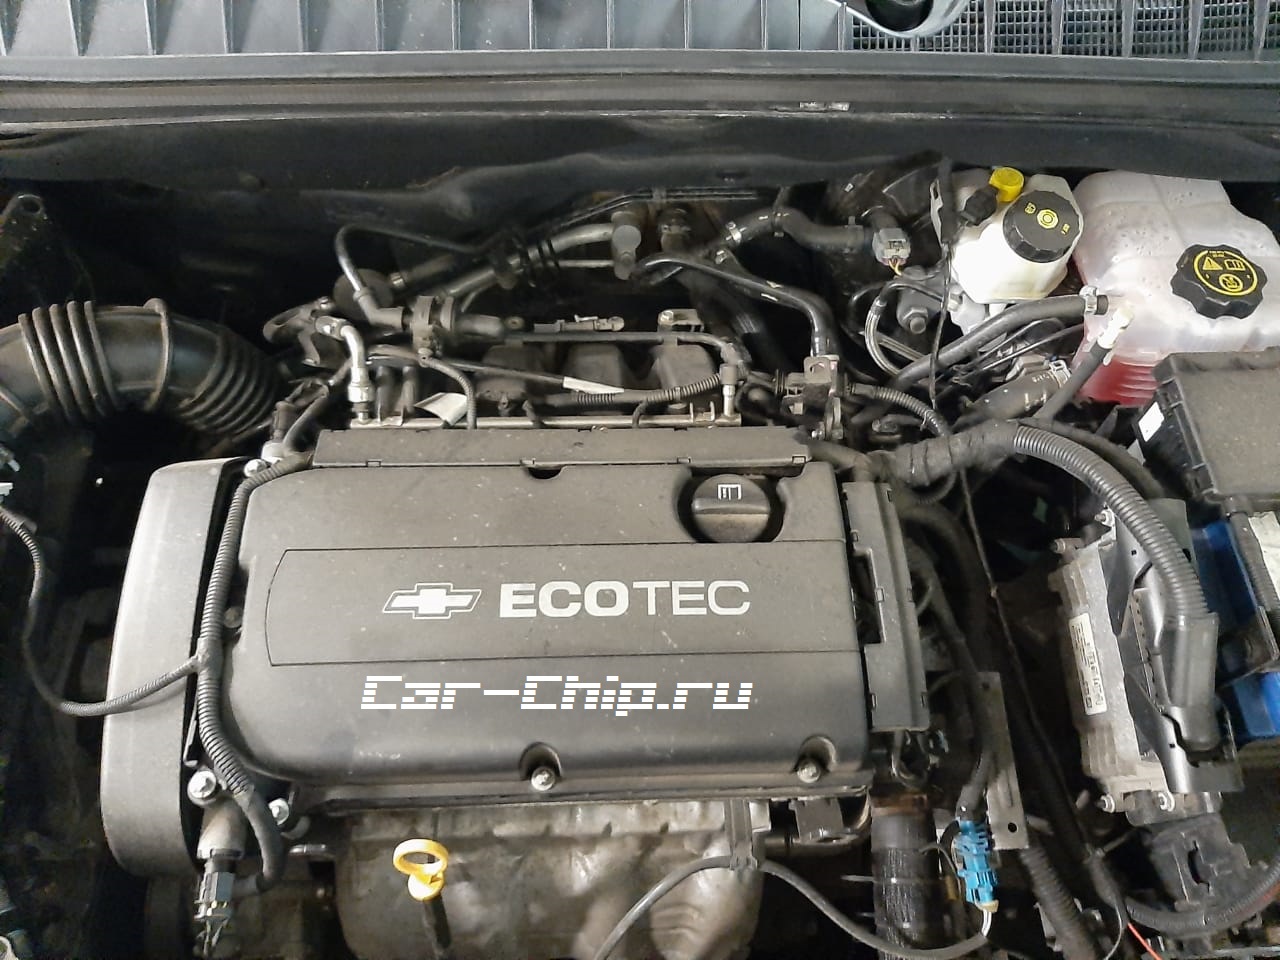 Специалистами компании Car-Chip выполнено оптимизация штатного ПО, перевод на евро2 Chevrolet Orlando 1.8 140л.с. 2012 г.в., использовалась программа от НПО АДАКТ.